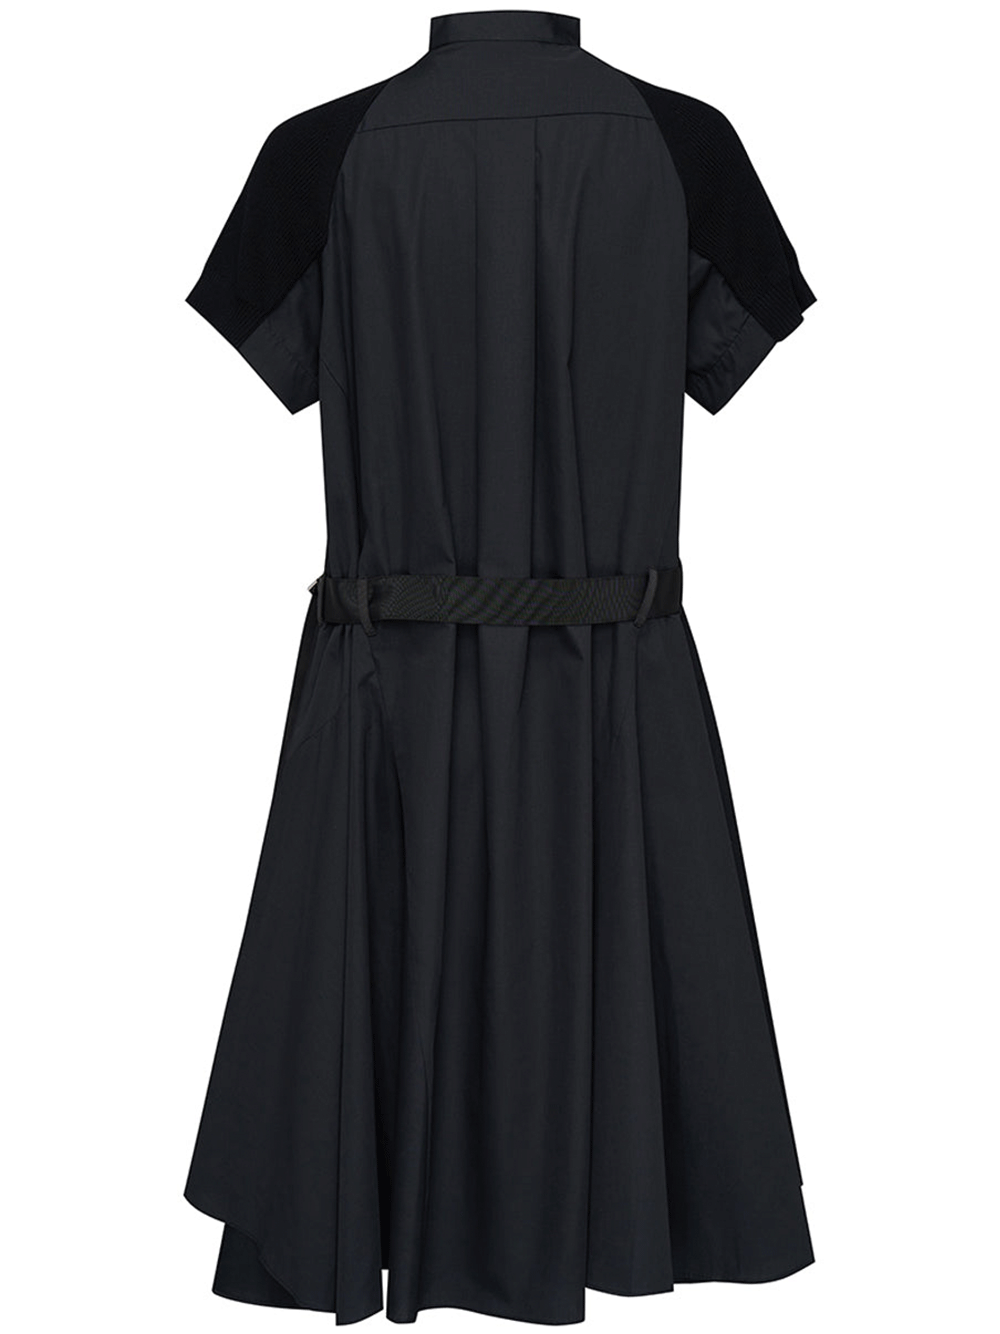 sacai-Cotton-Knit-Dress-Black-2